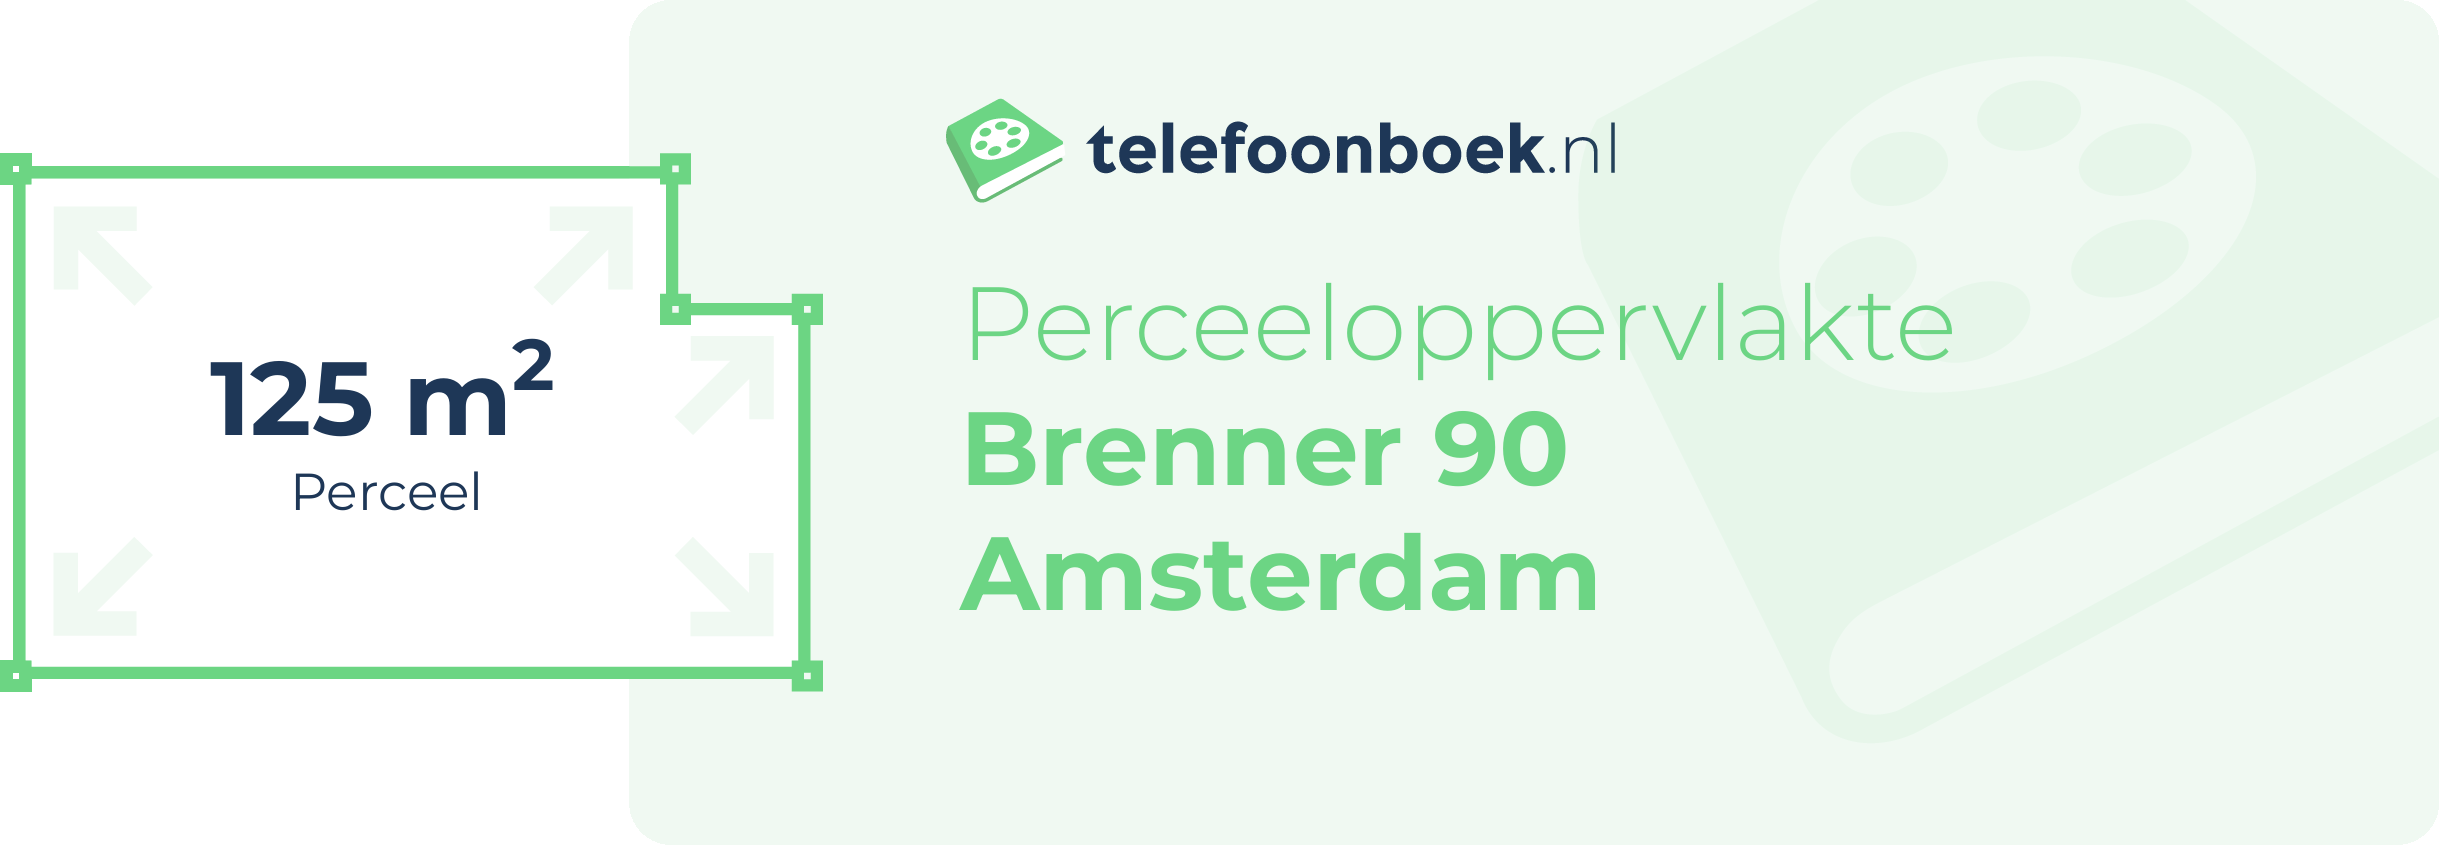 Perceeloppervlakte Brenner 90 Amsterdam